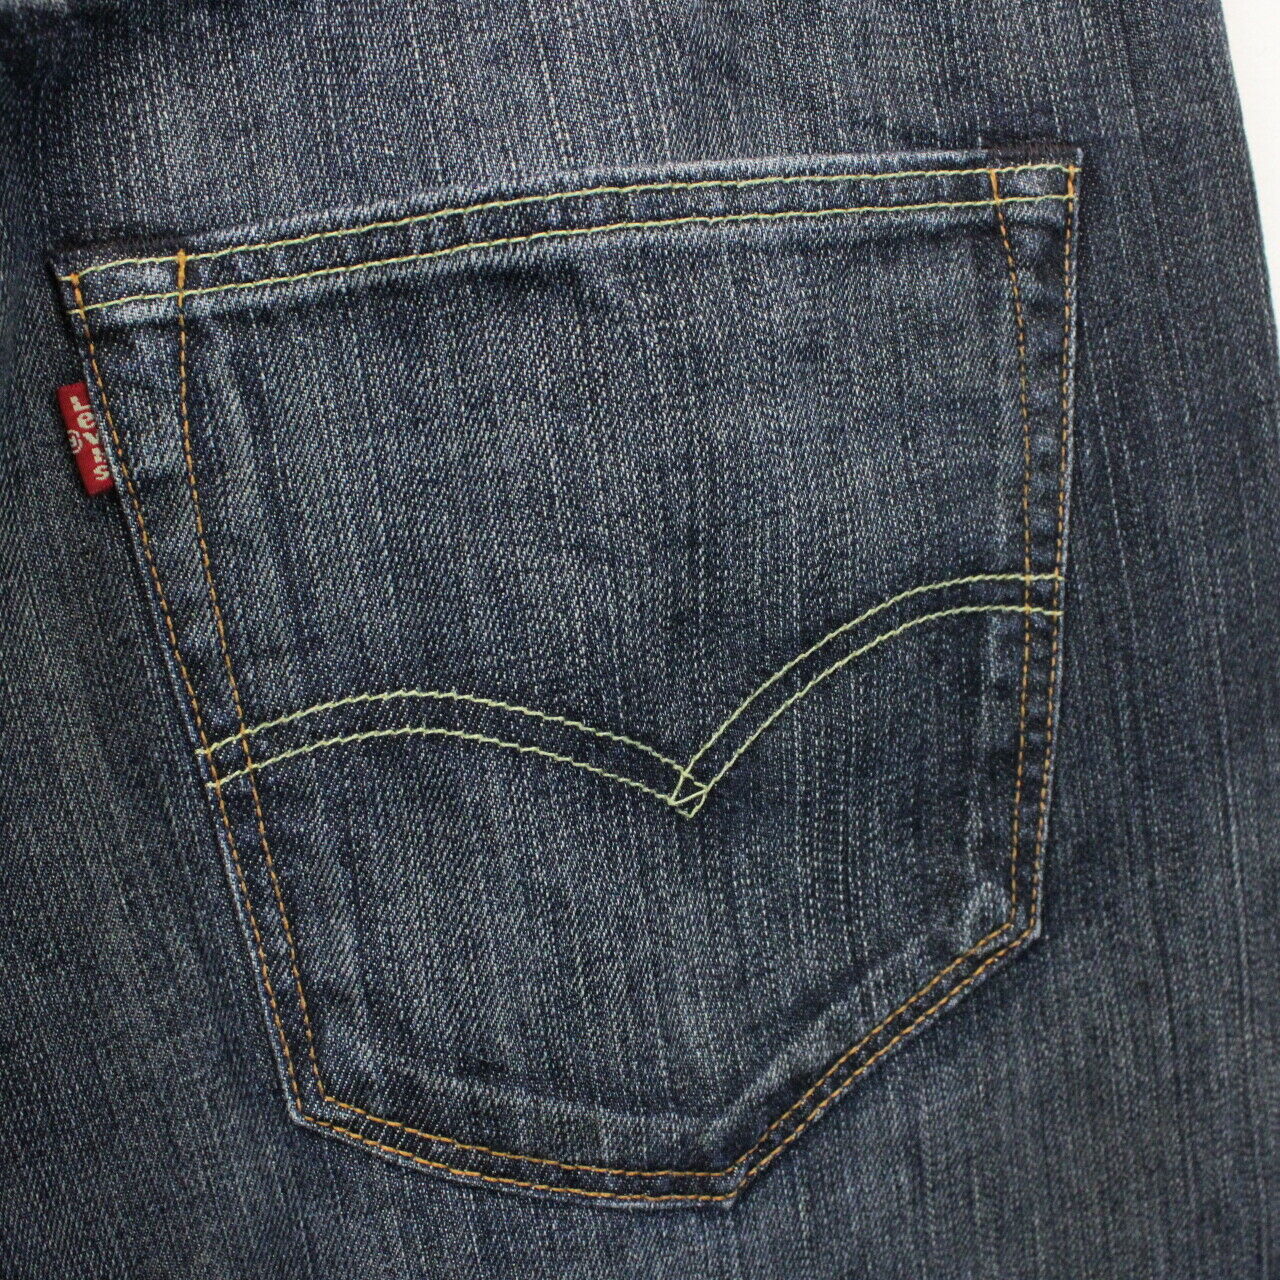 LEVIS 501 Jeans Dark Blue | W38 L32